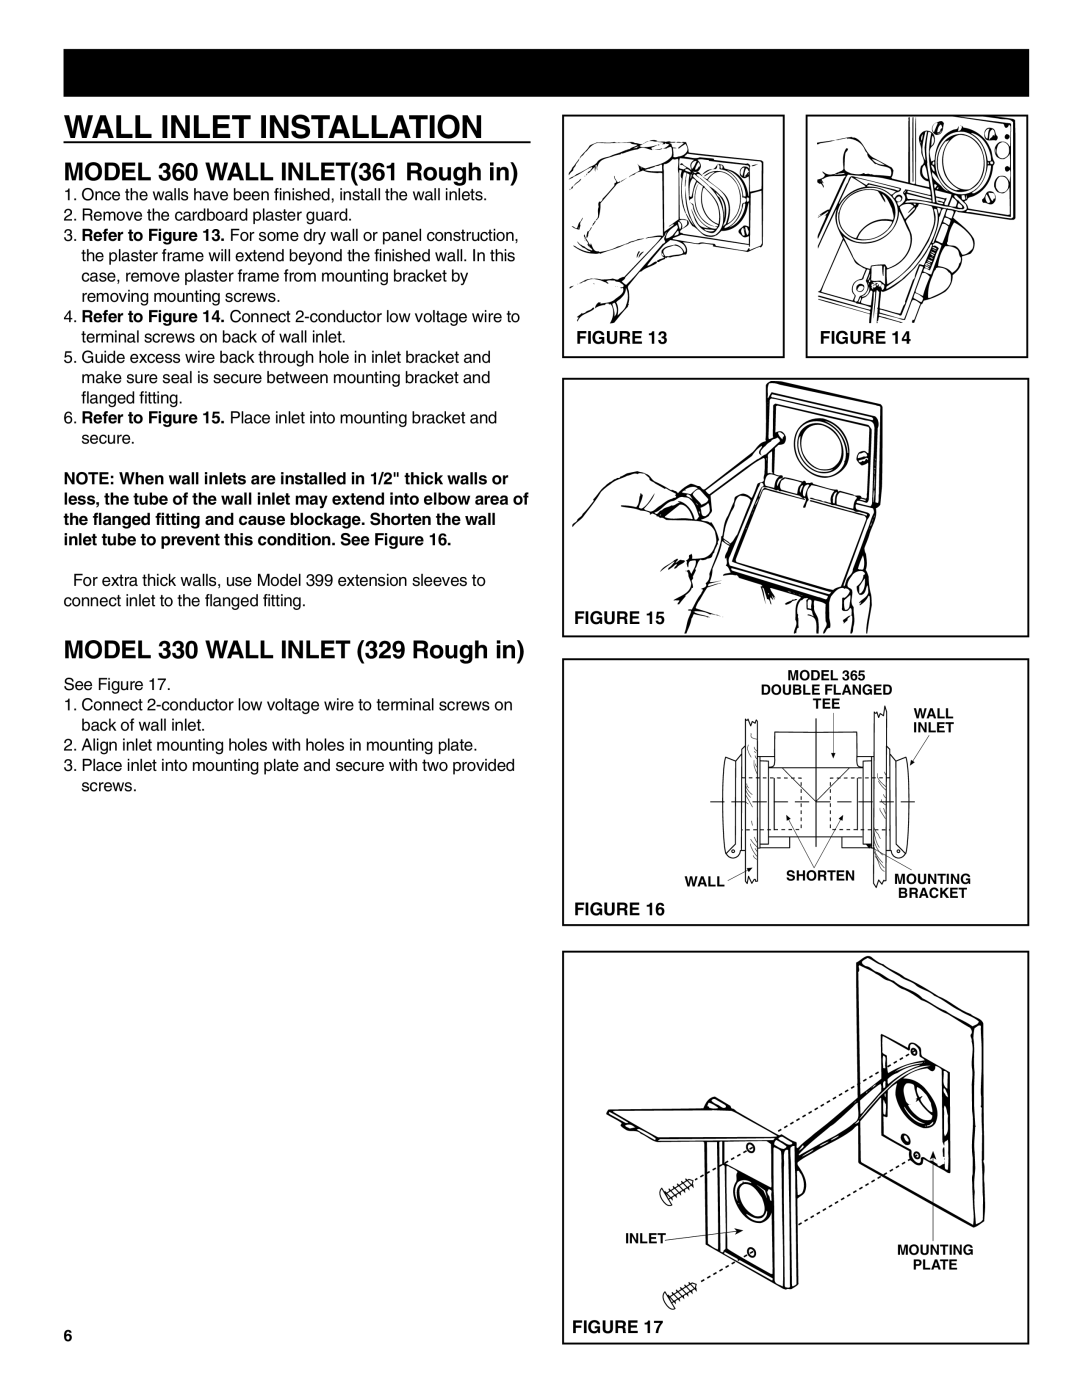 NuTone CV352 manual Wall Inlet Installation, MODEL 360 WALL INLET361 Rough in, MODEL 330 WALL INLET 329 Rough in 